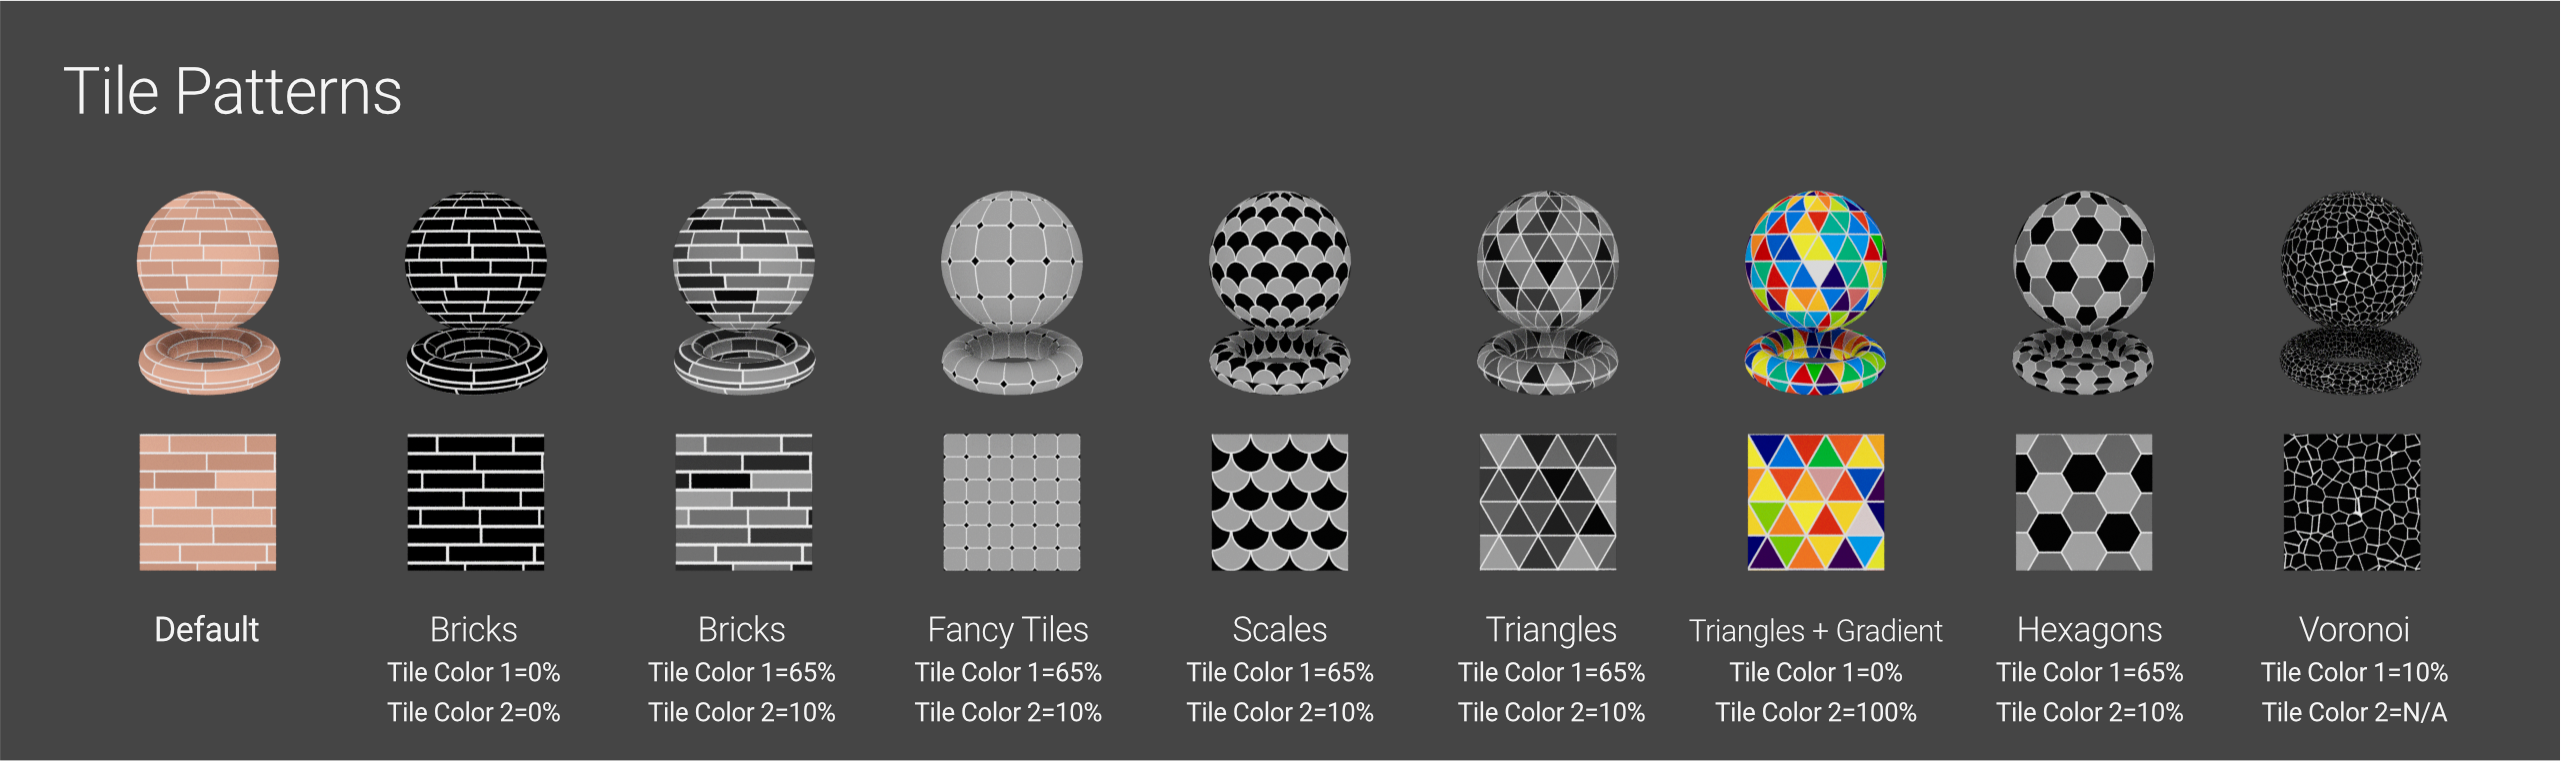 OG035 004 Tile Patterns.png